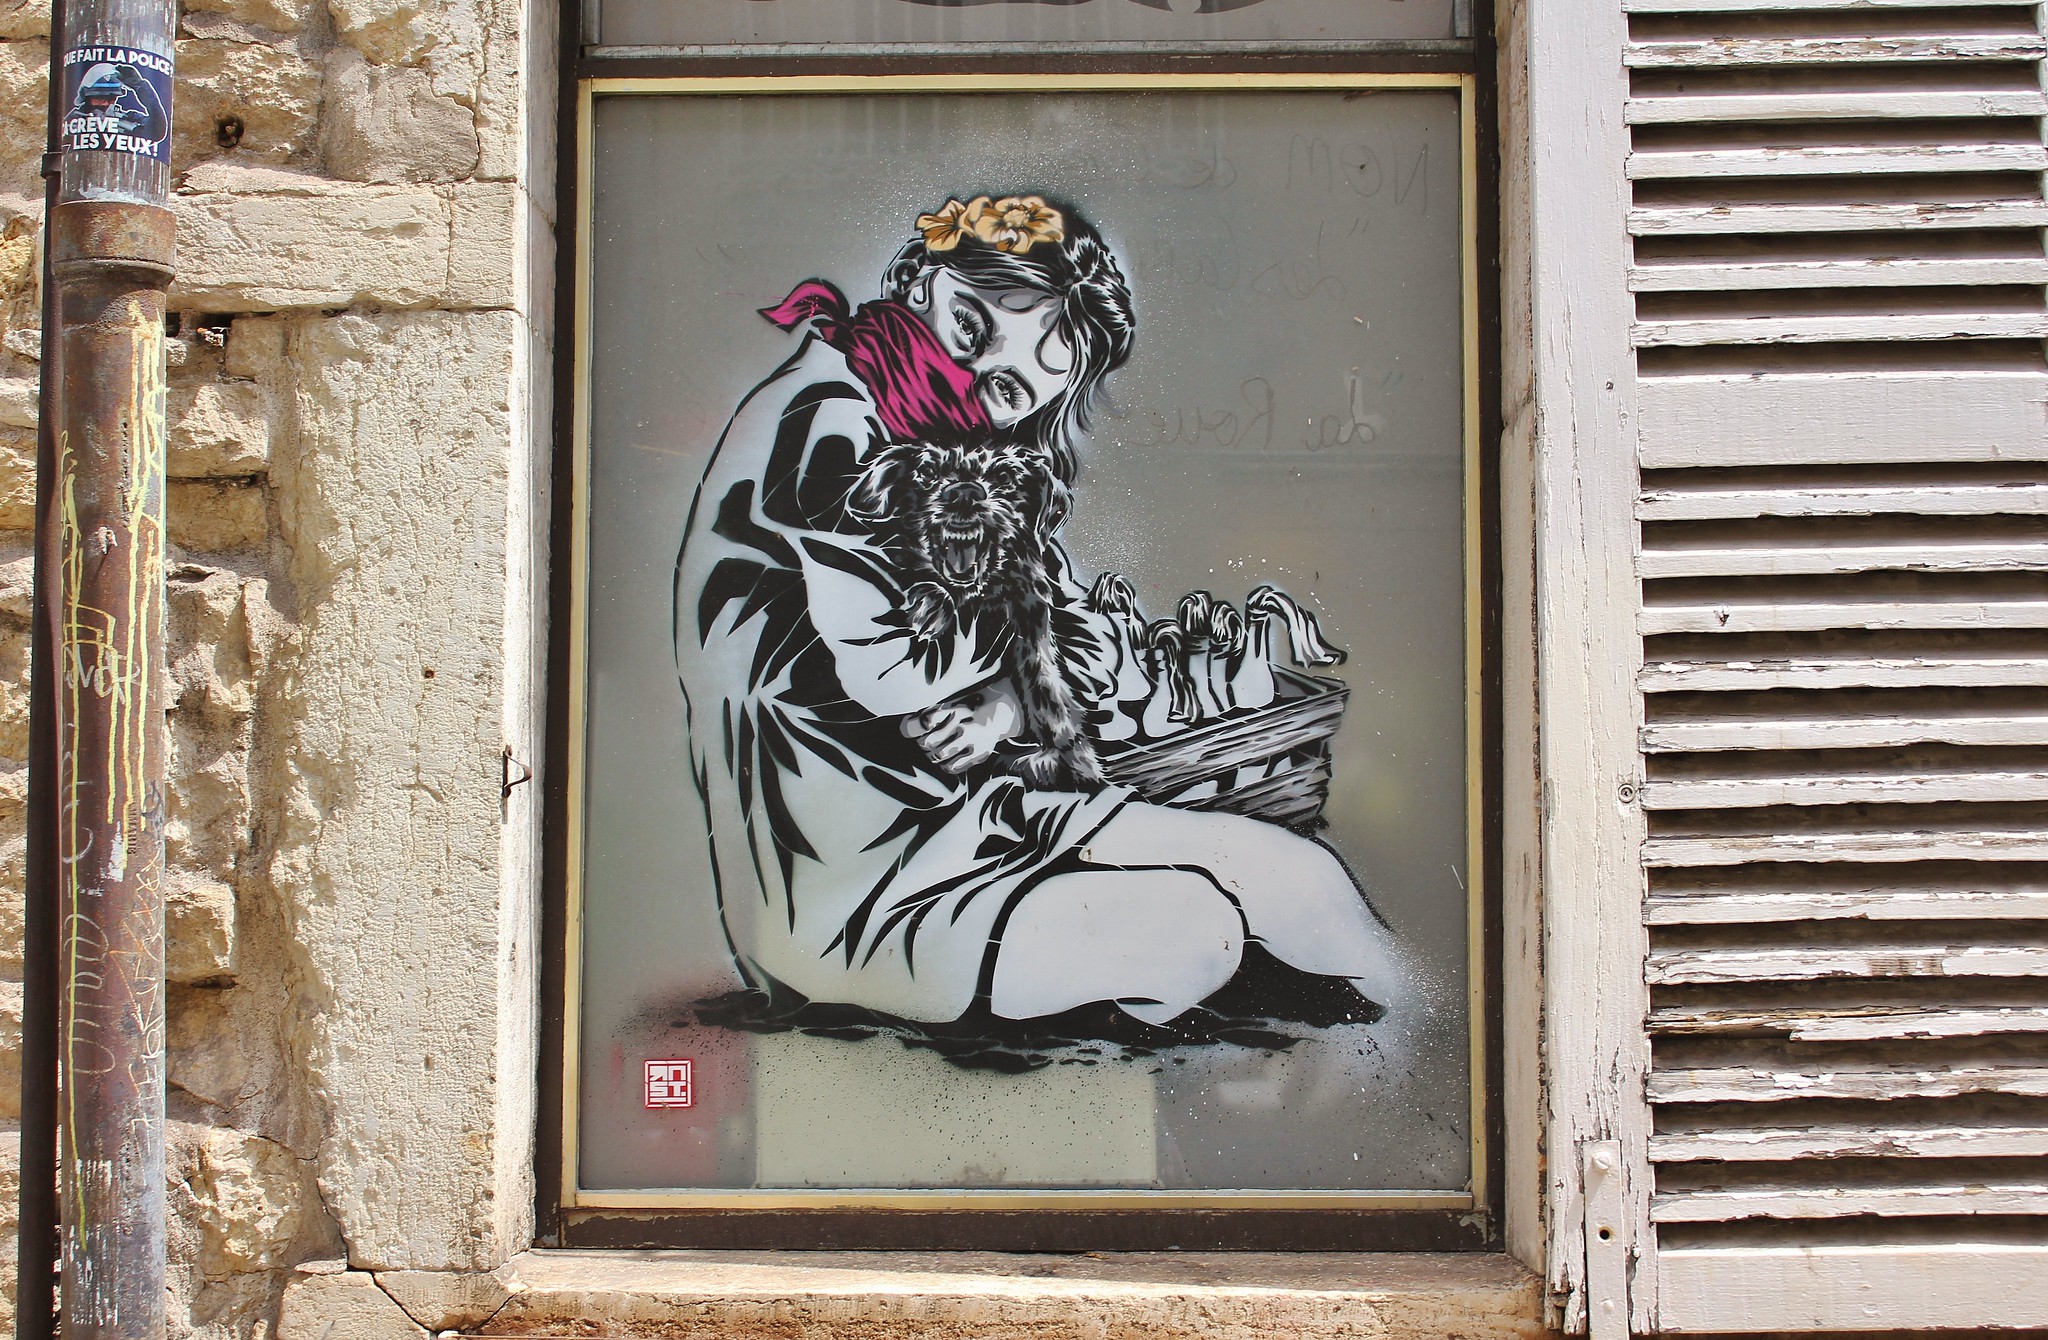 Street Art by Street Artist RNST in François Jouffroy, Dijon, France